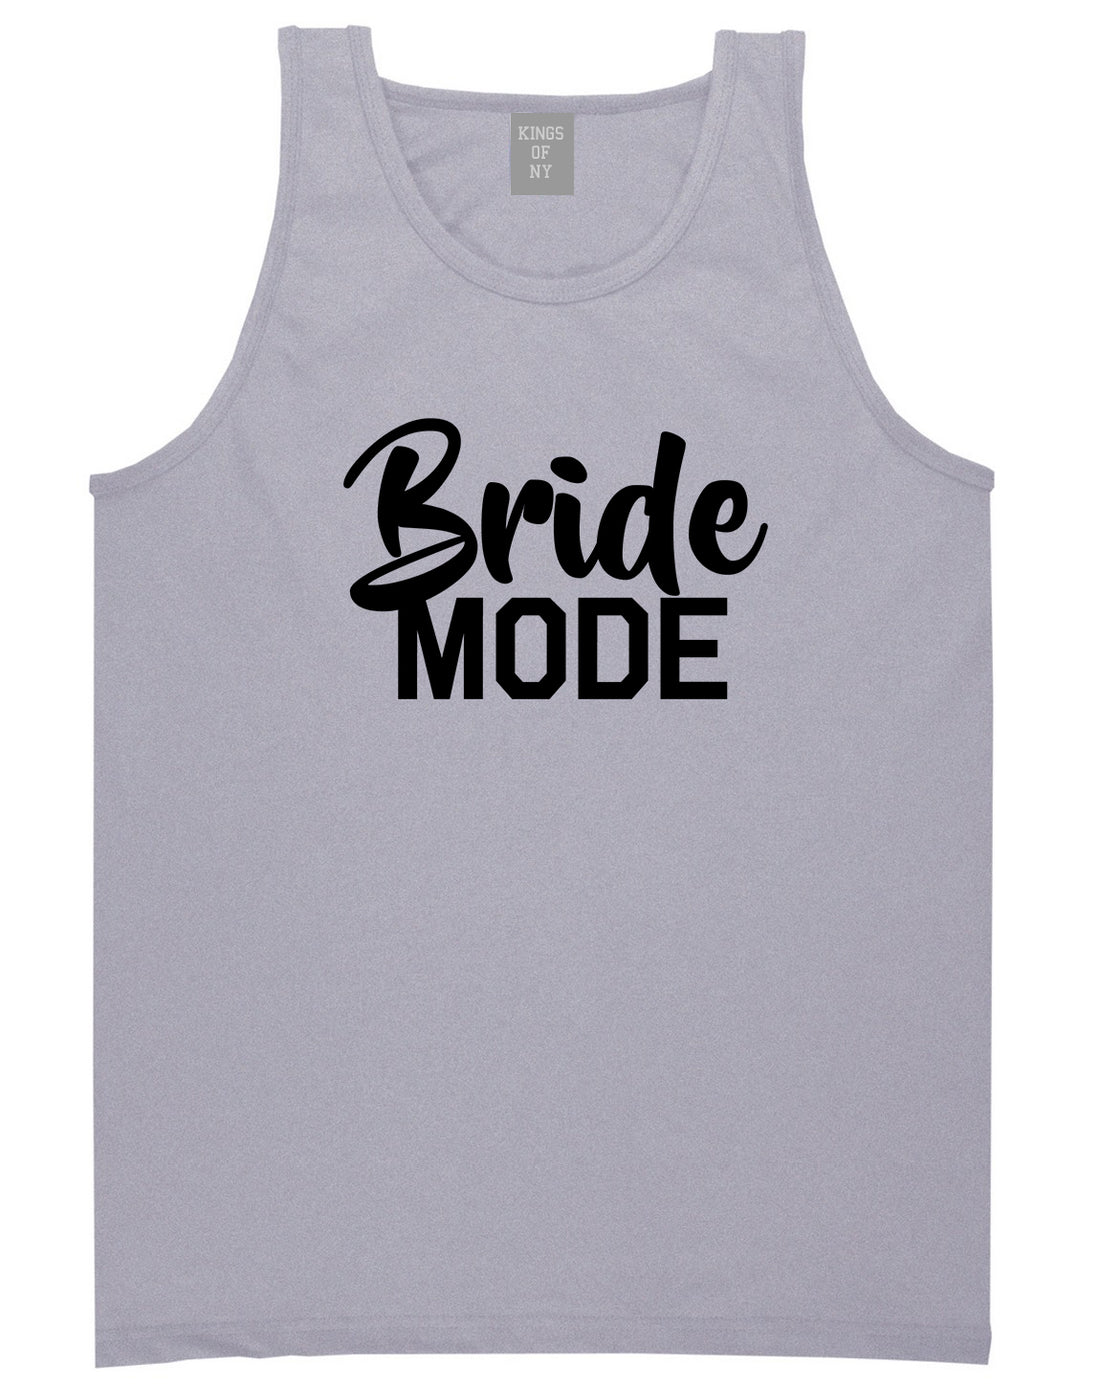 Bride Mode Bridal Mens Grey Tank Top Shirt by KINGS OF NY